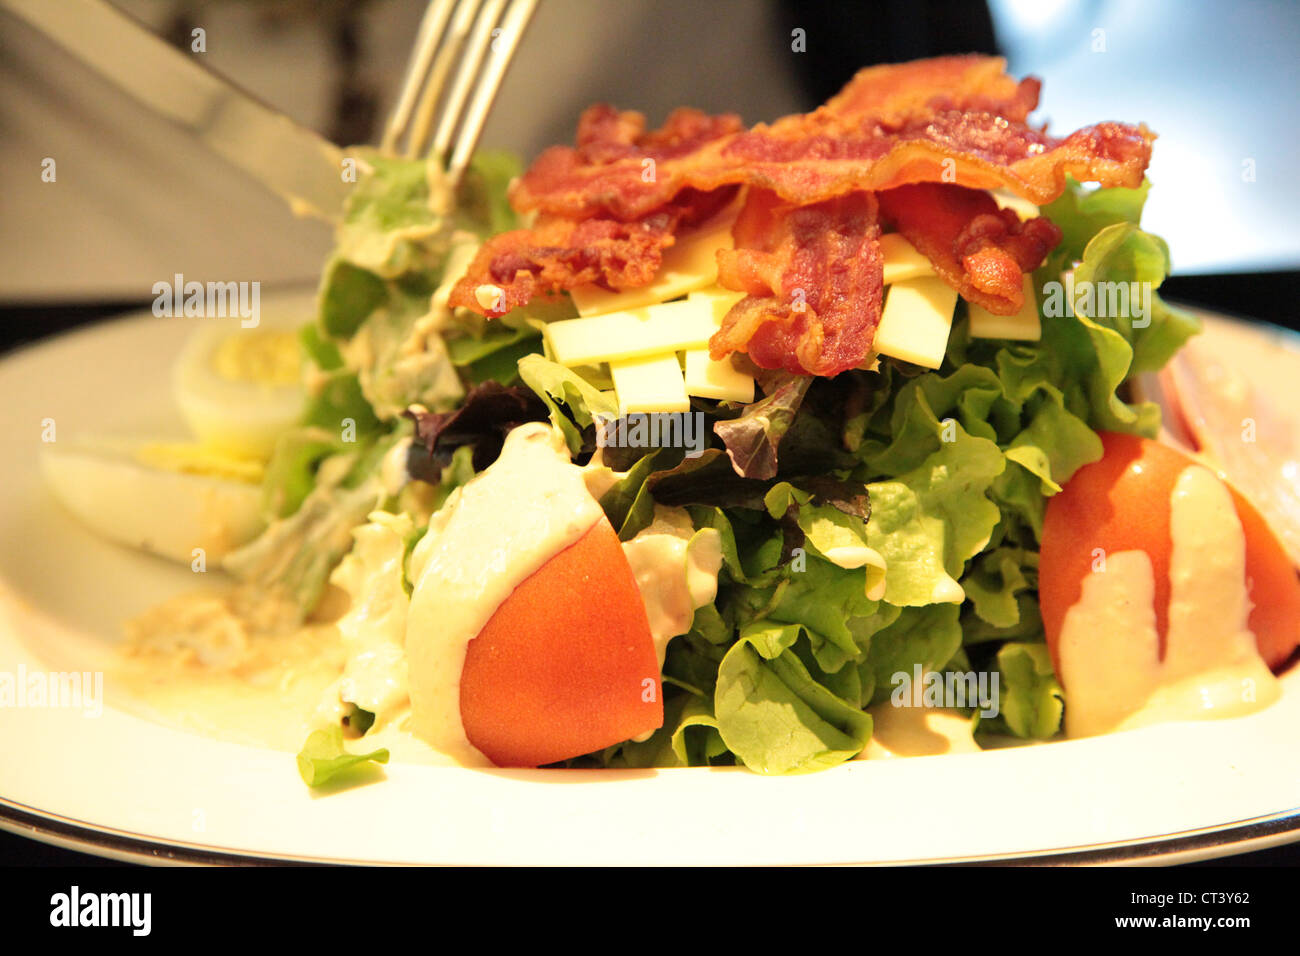 Si tratta di una foto di un sano piatto di insalata in una piastra con pancetta, pomodoro e formaggio. Sembra ottima con la salsa e uova Foto Stock